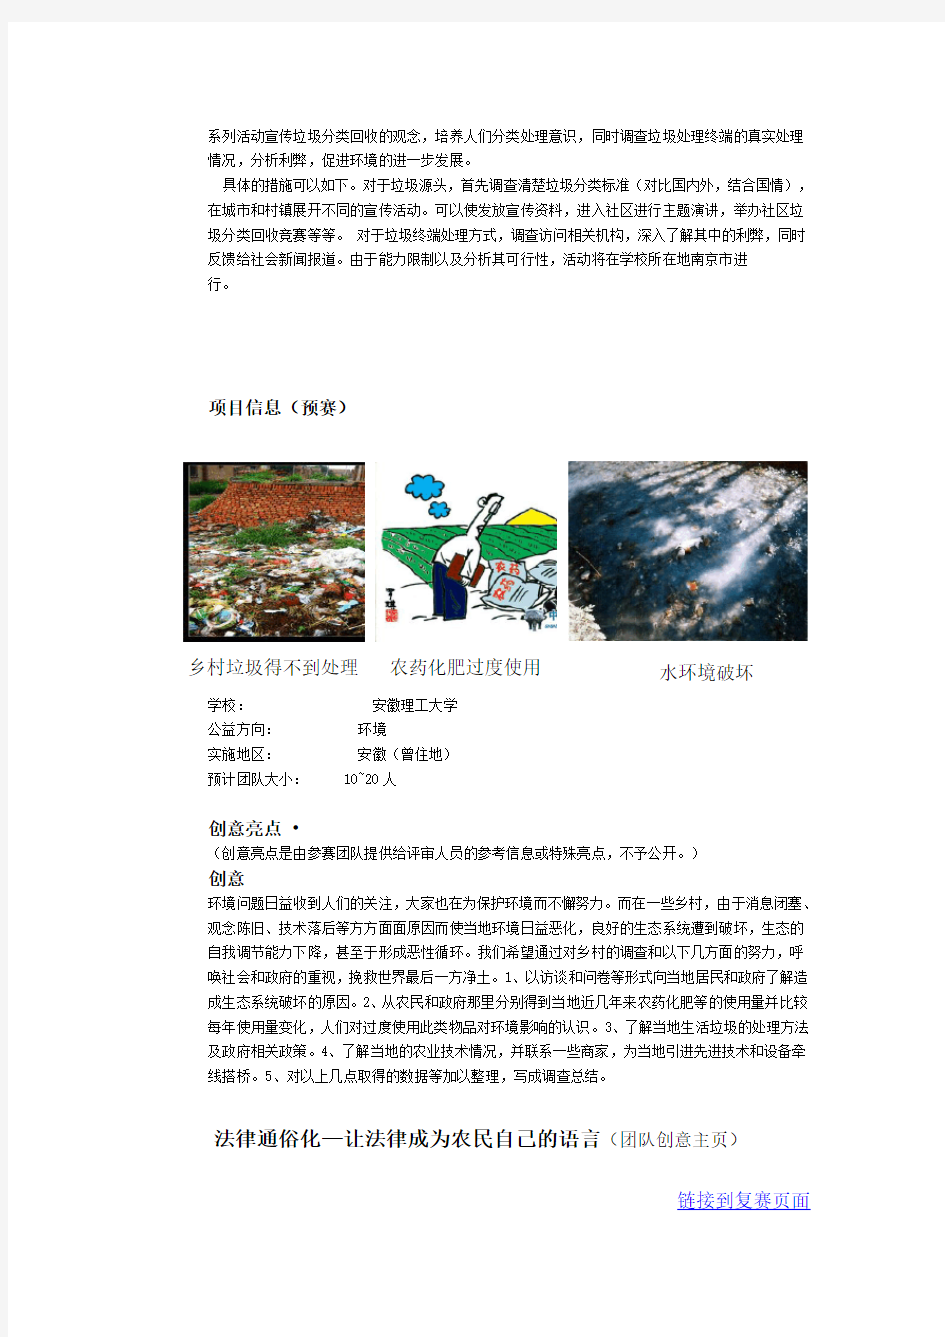 益暖中华-谷歌杯第五届中国大学生公益创意大赛